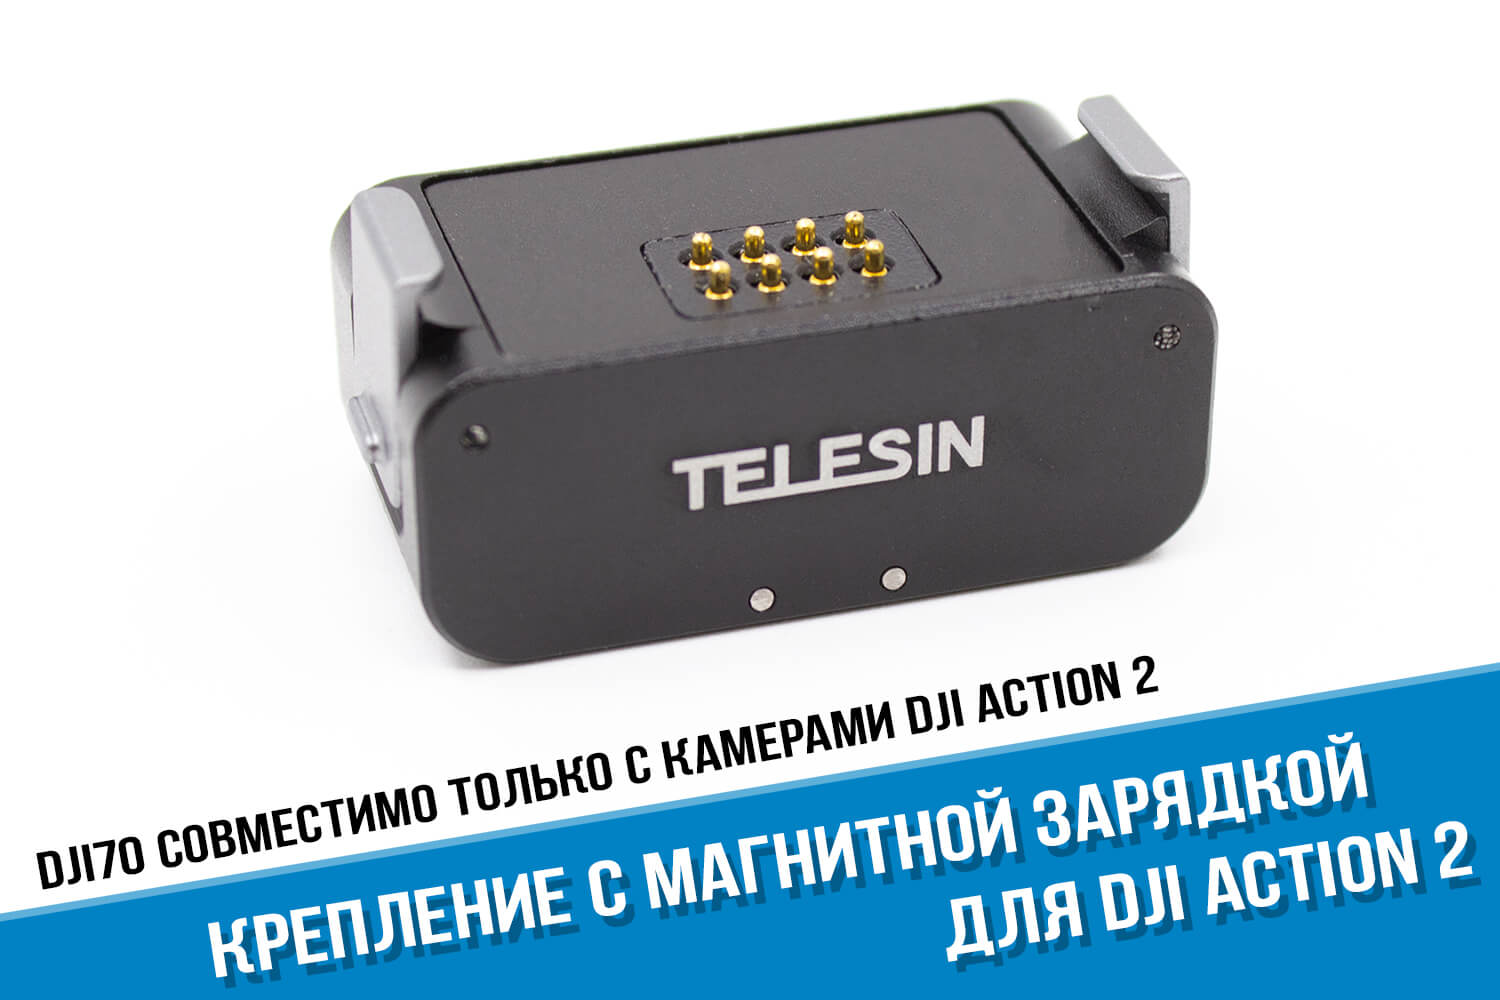 Крепление камеры DJI Action 2 с магнитной зарядкой фирмы Telesin